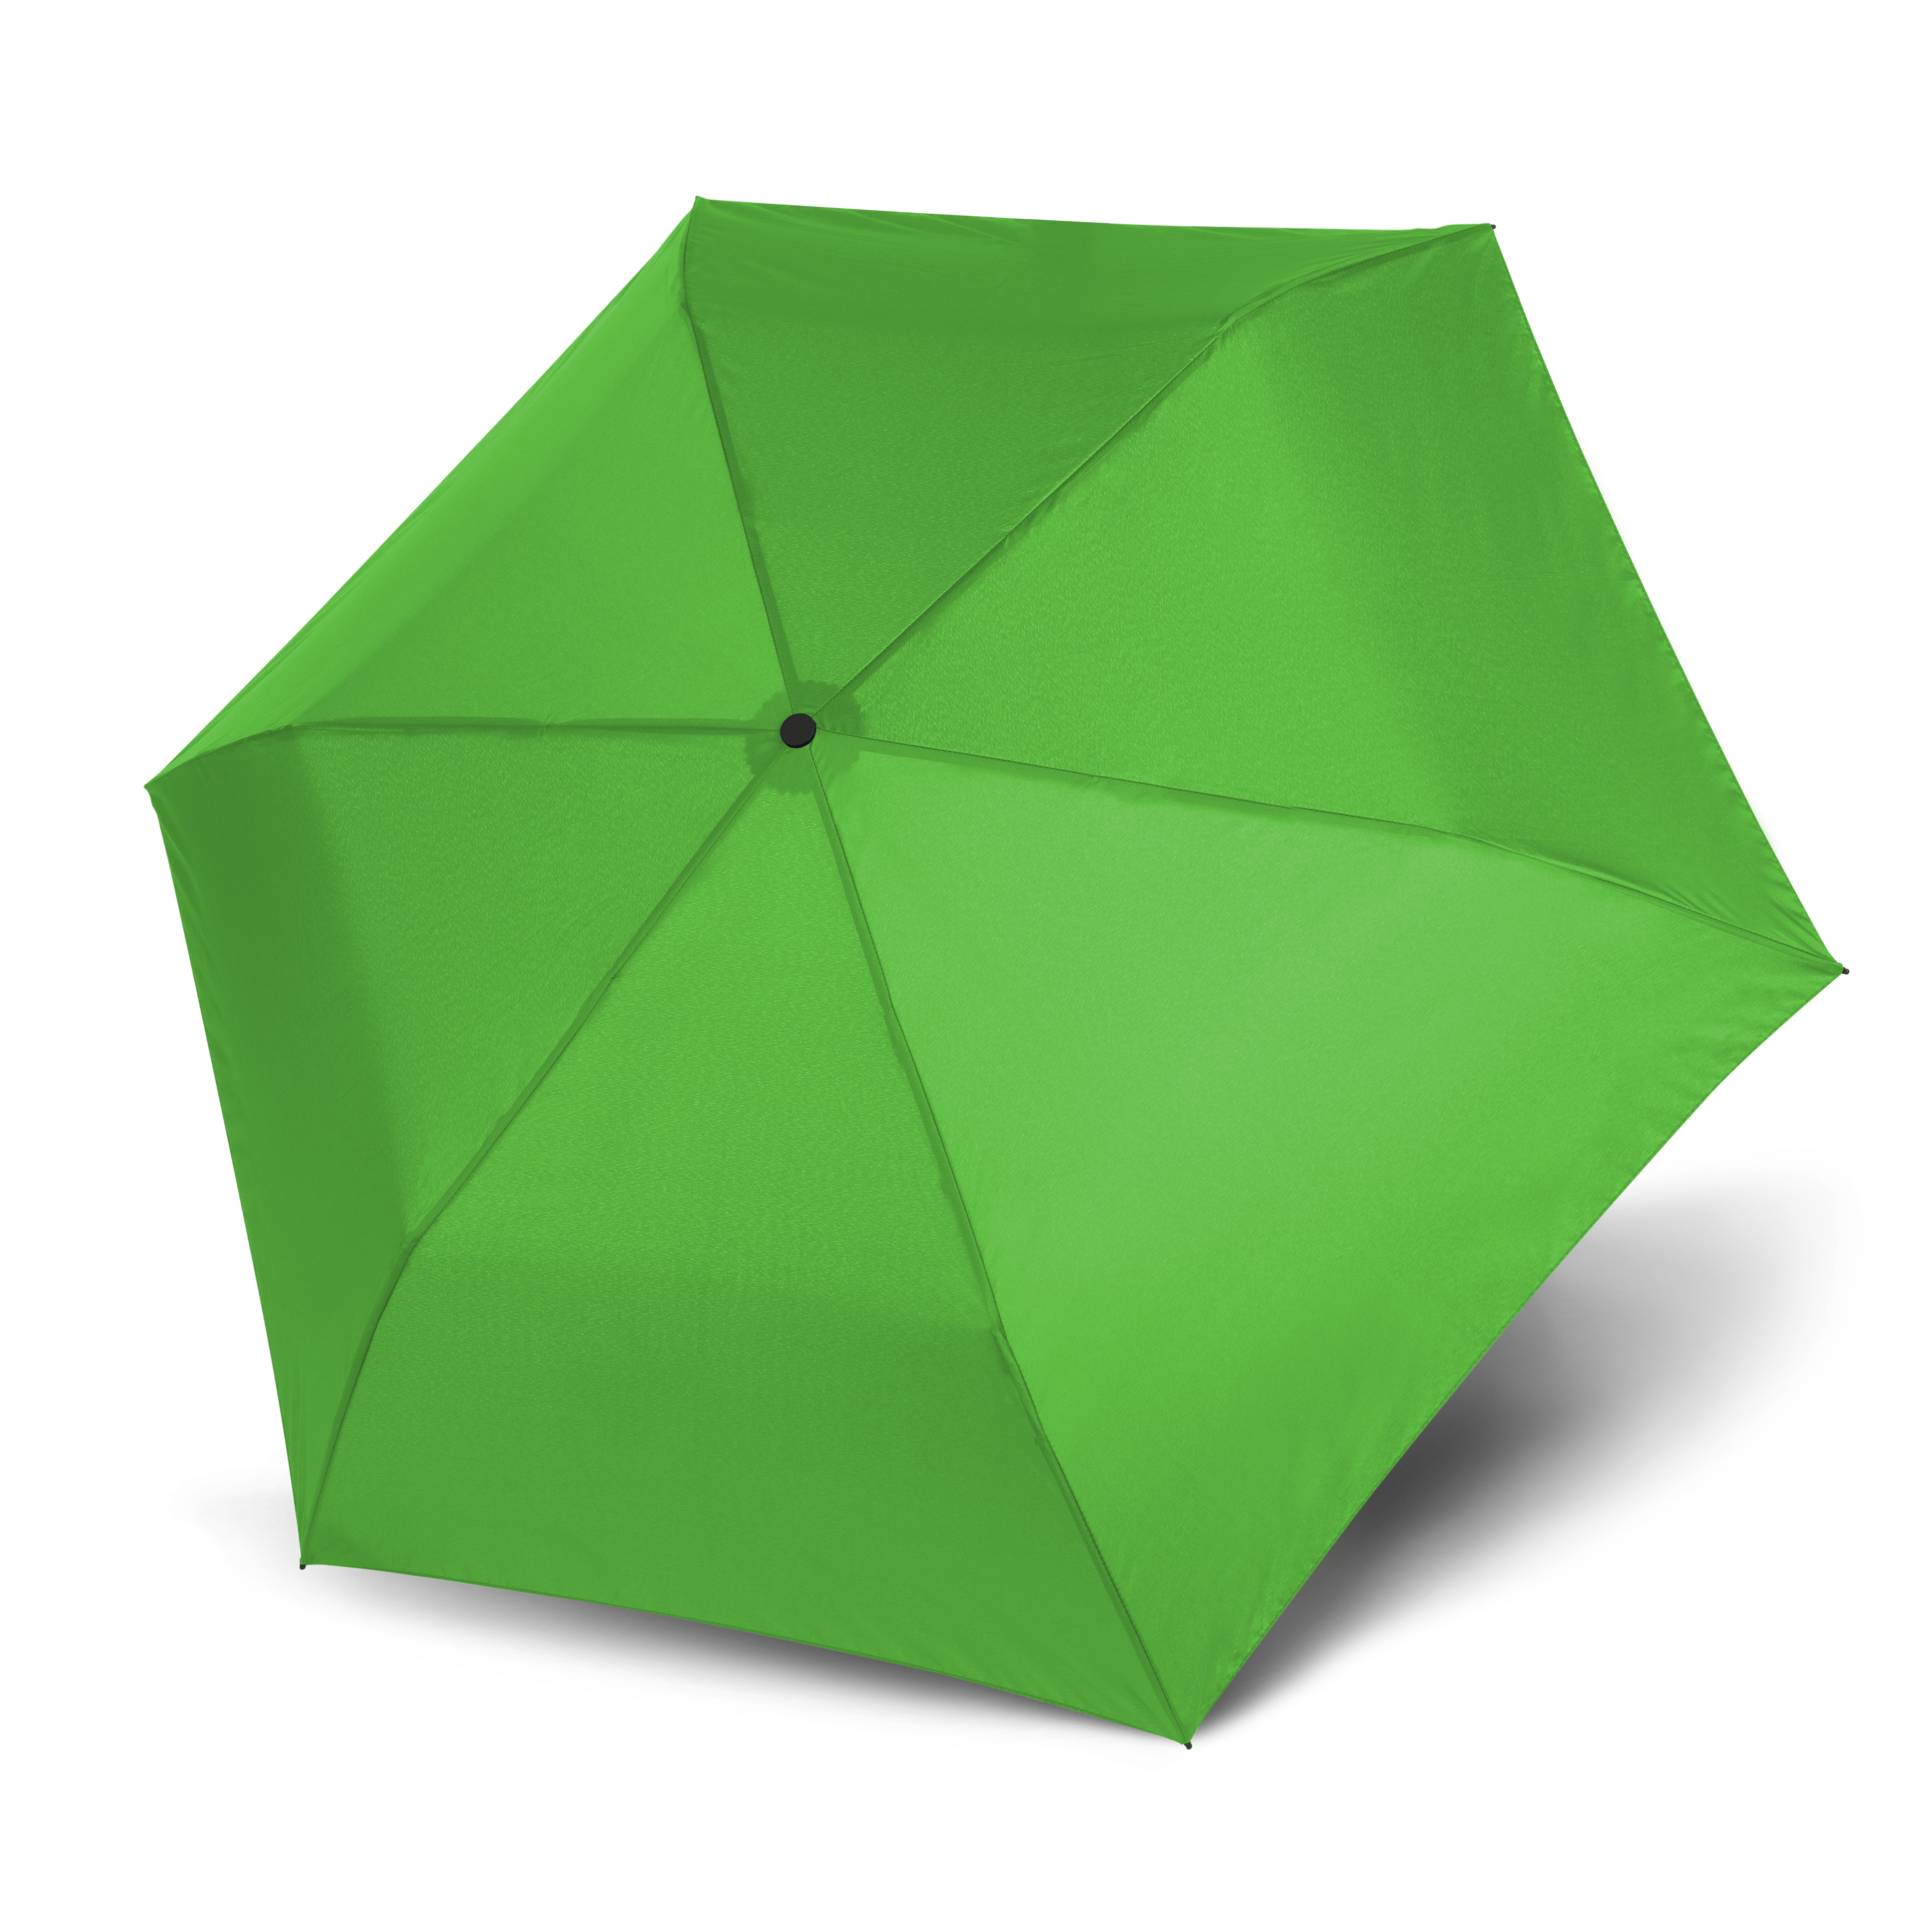 Doppler Zero99 Ultra Light Taschenschirm sehr 99g, Regenschirm leichter Farbe:Grün